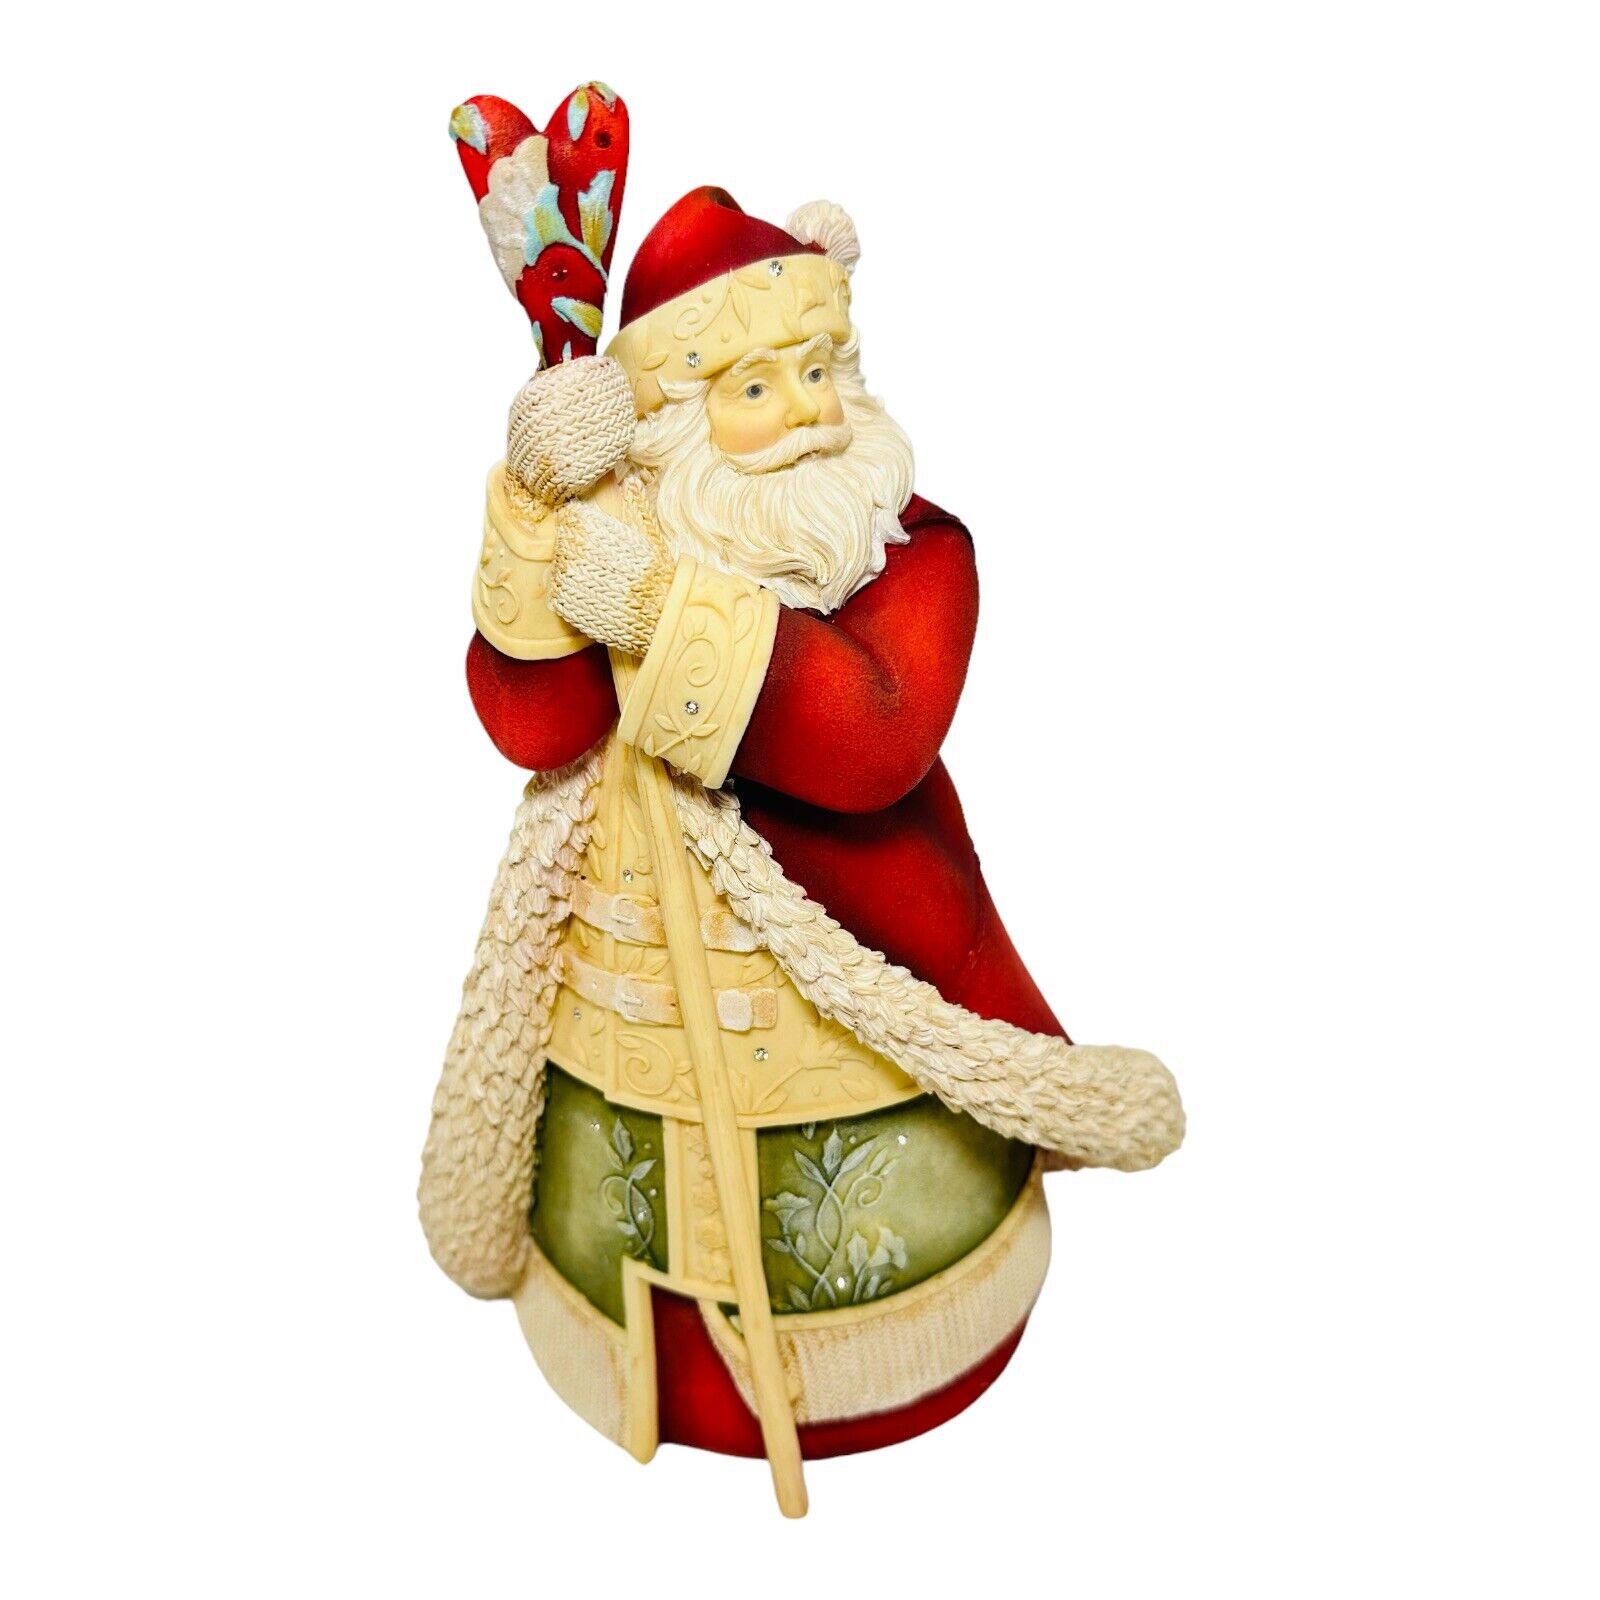 Enesco The Heart of Christmas Santa Claus Figure 2012 4027171 9.25”